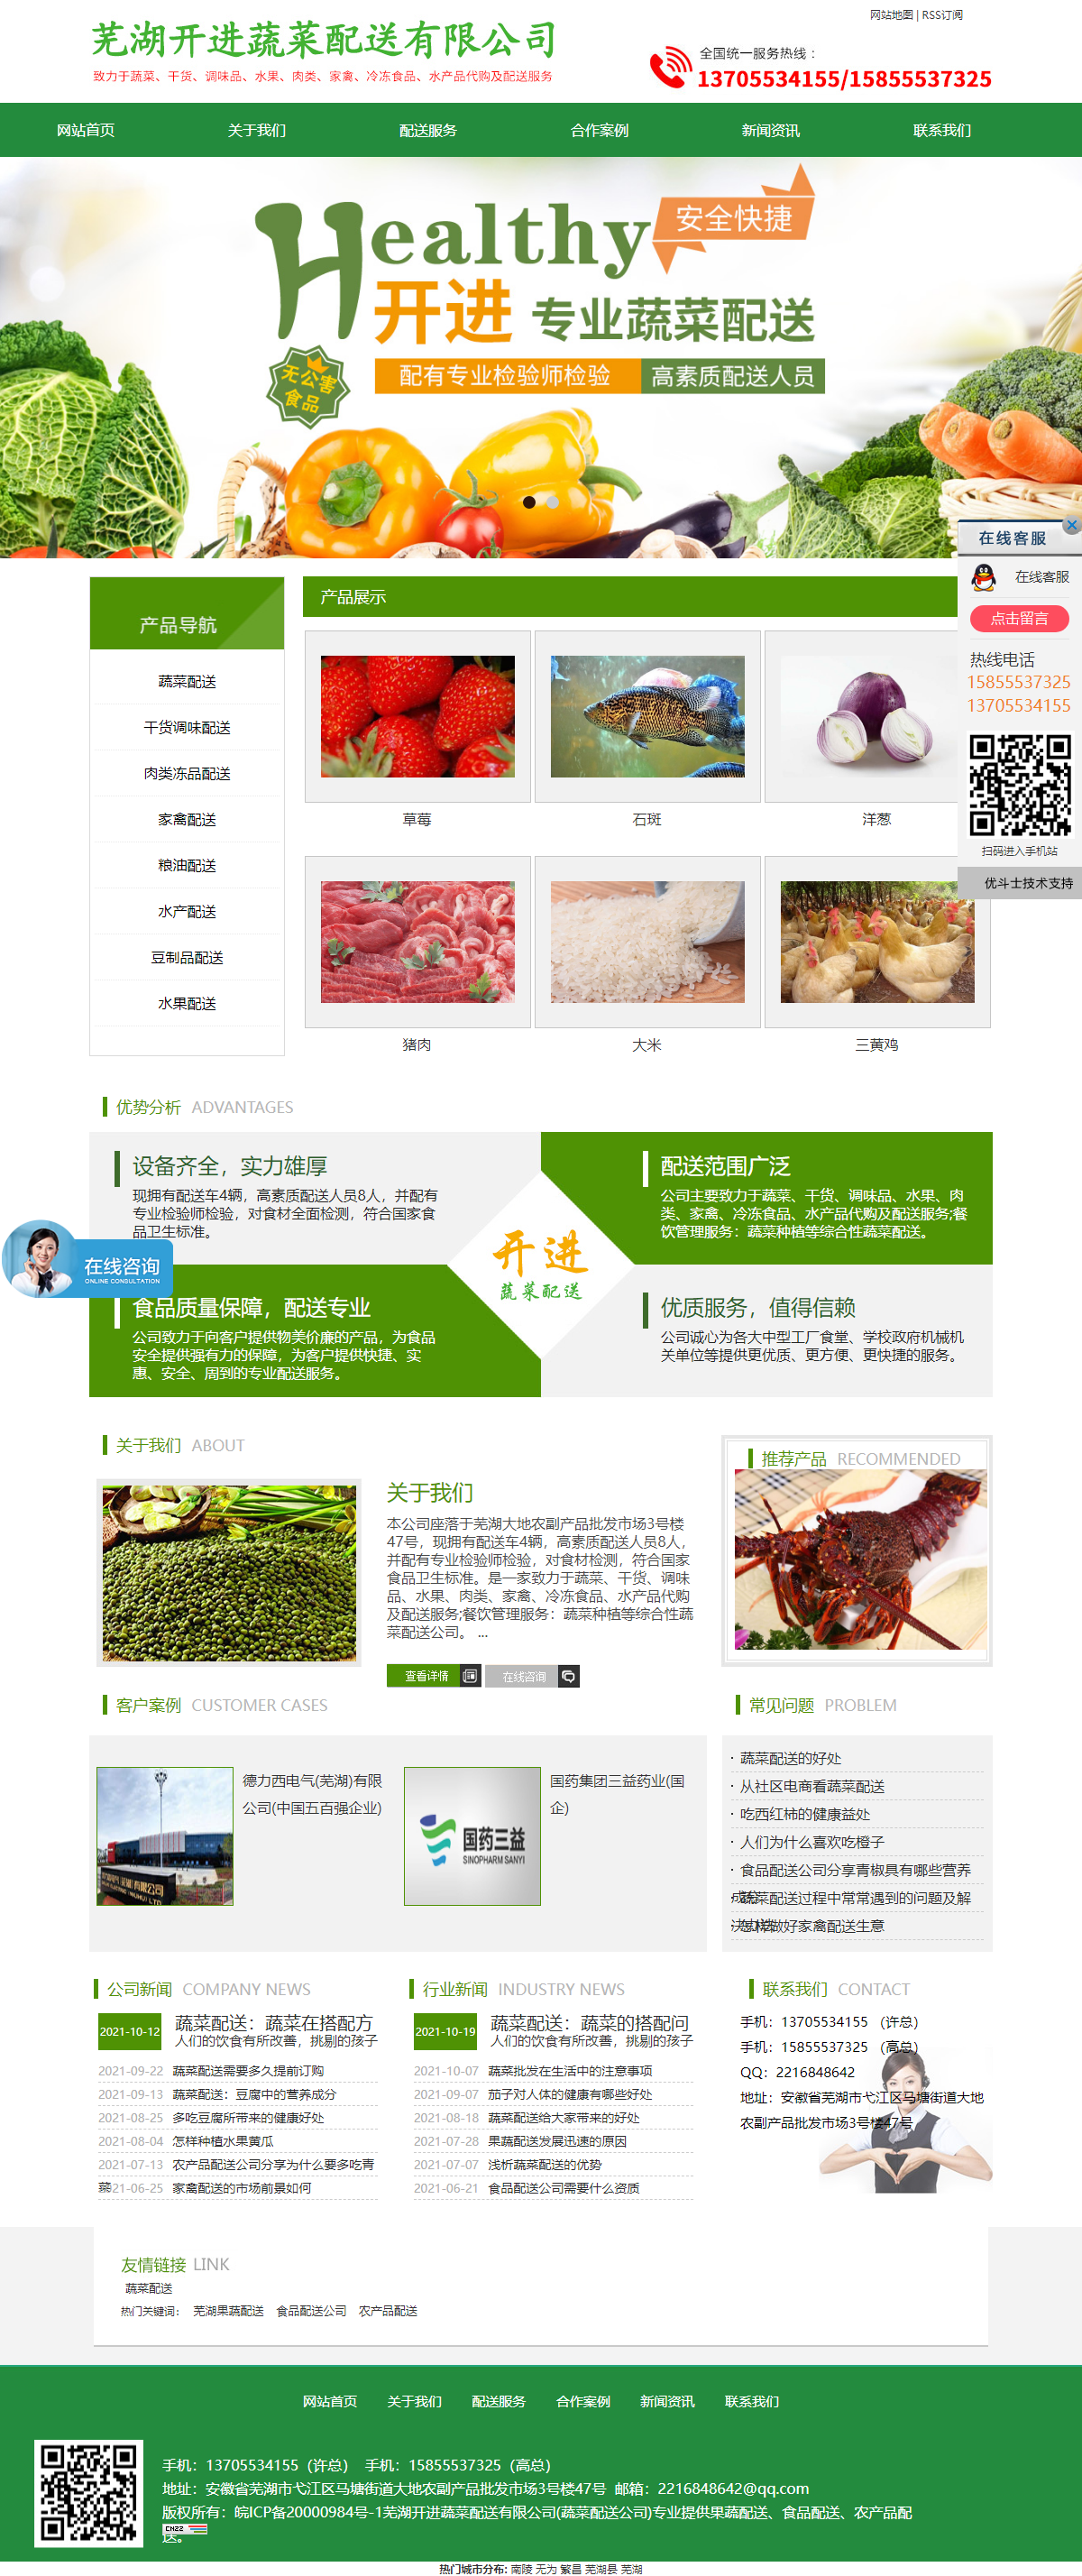 芜湖开进蔬菜配送有限公司网站案例